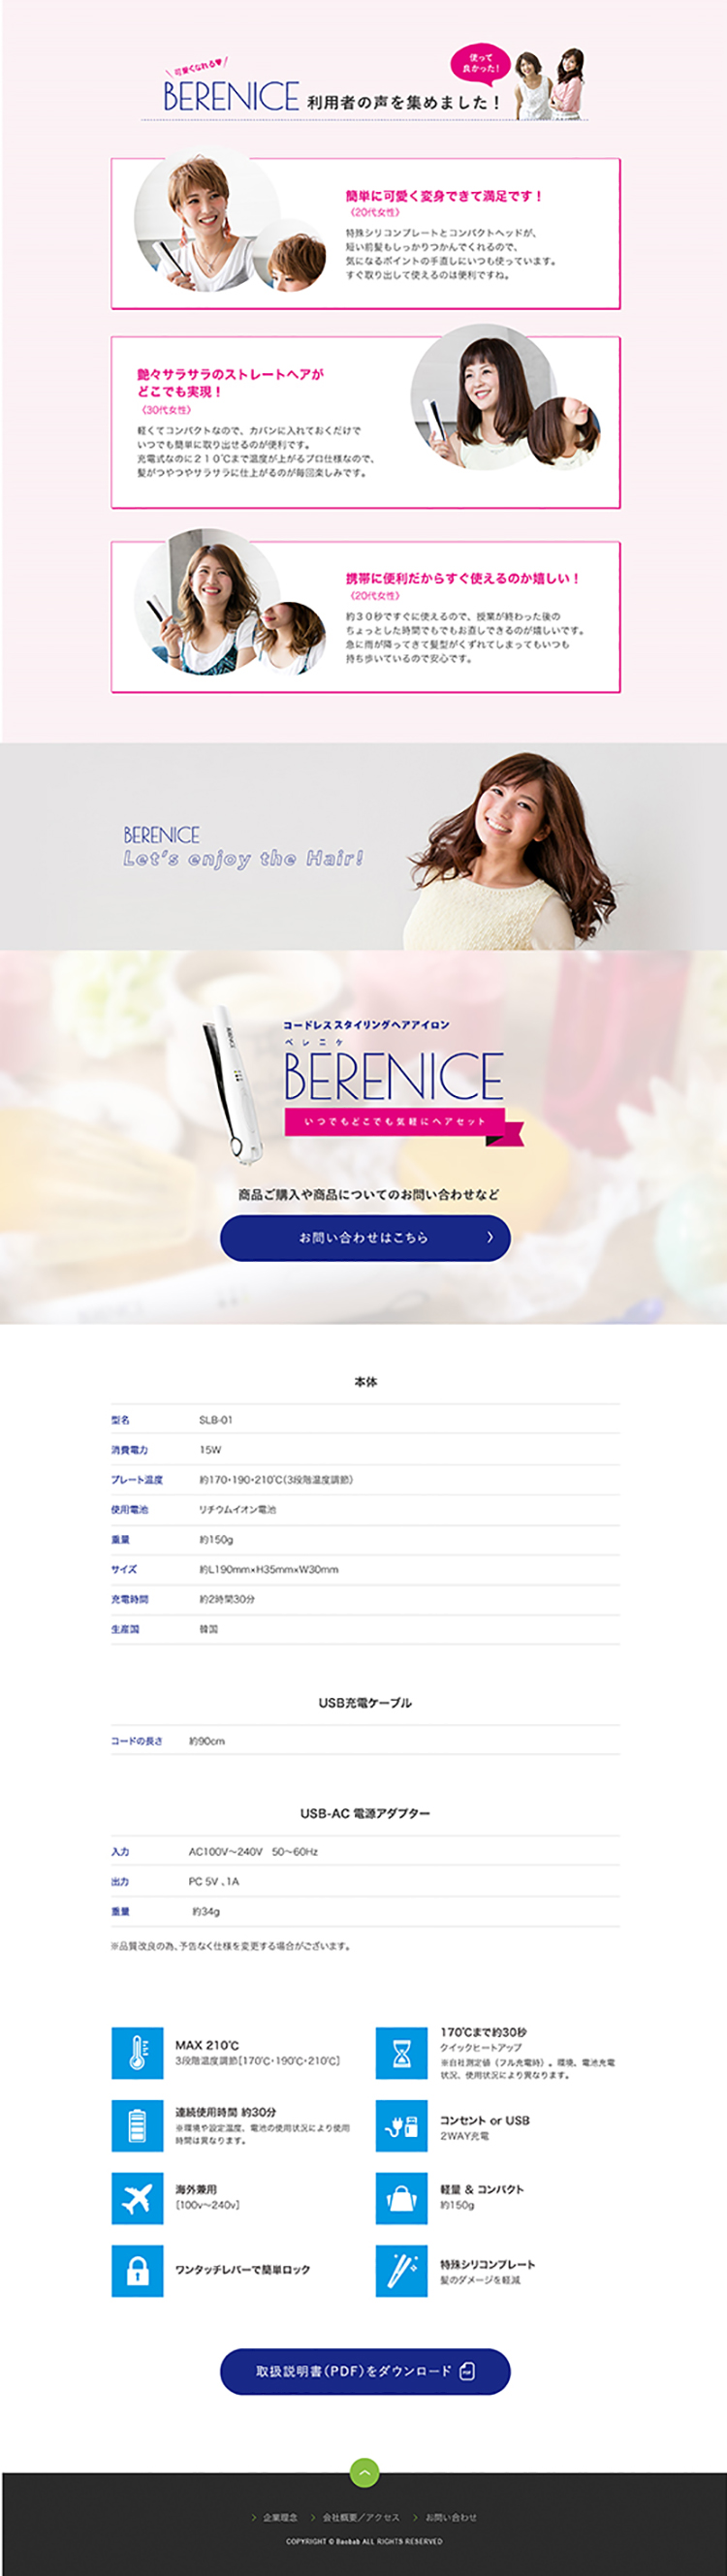 コードレスヘアアイロン「BERENICE」 商品サイト制作